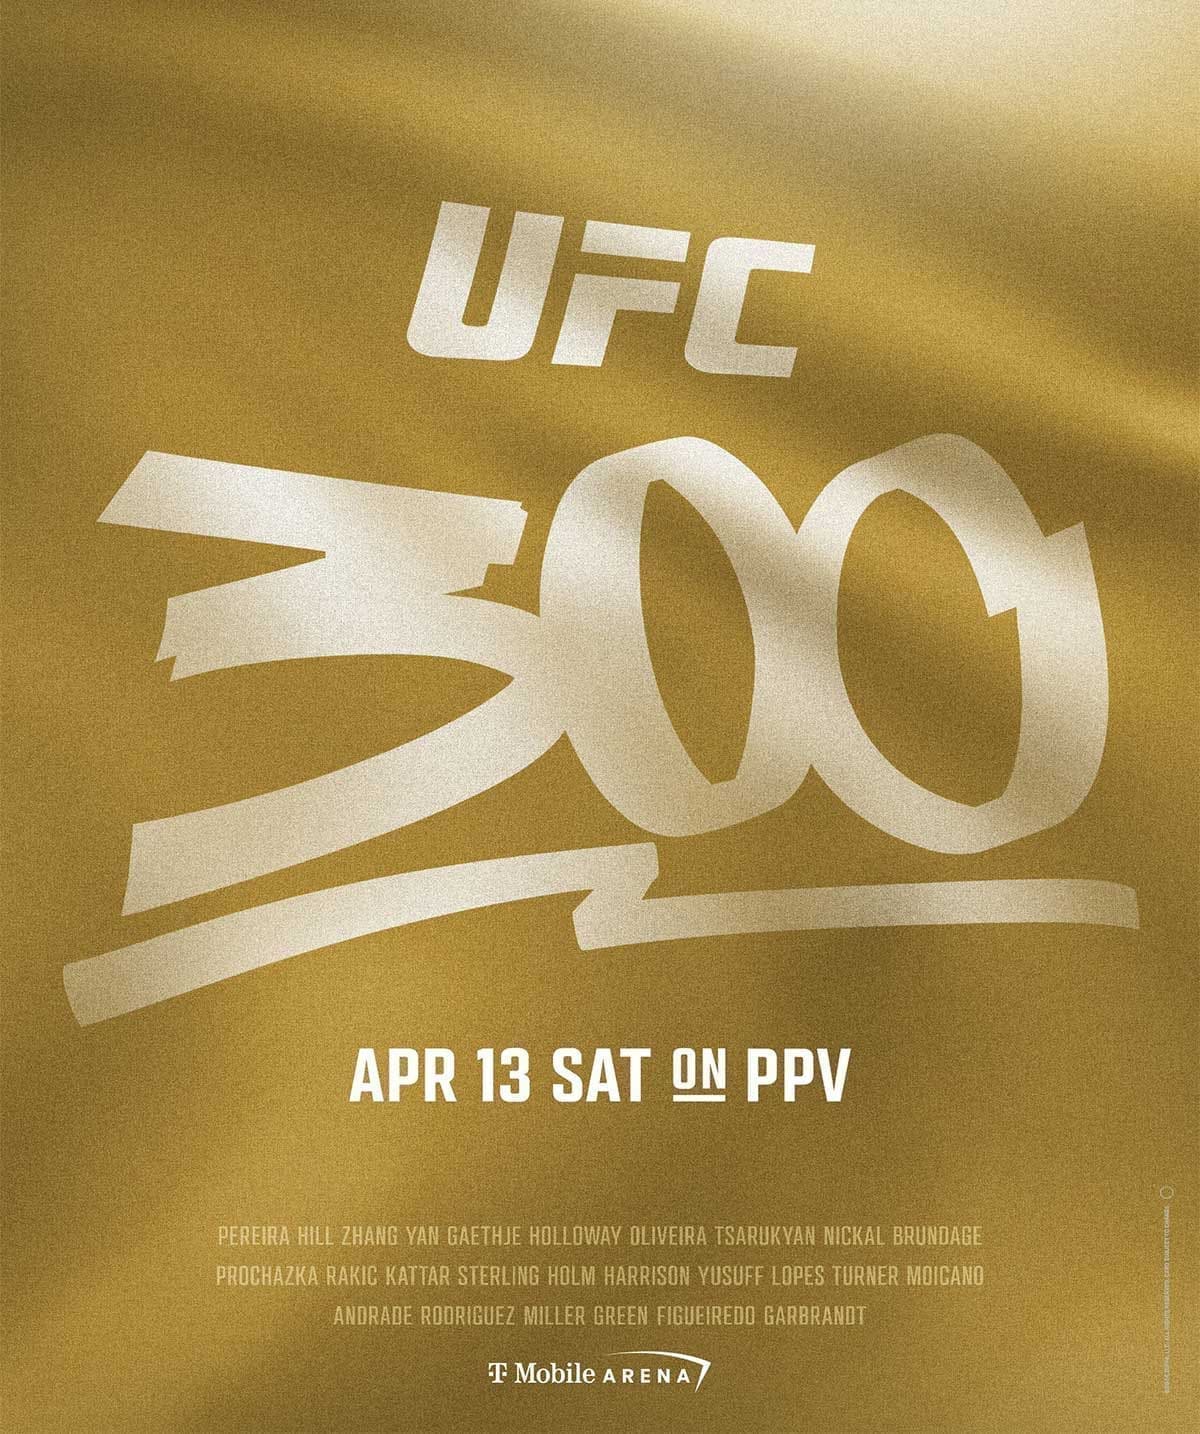 UFC 300: Перейра - Хилл дата проведения, кард, участники и результаты